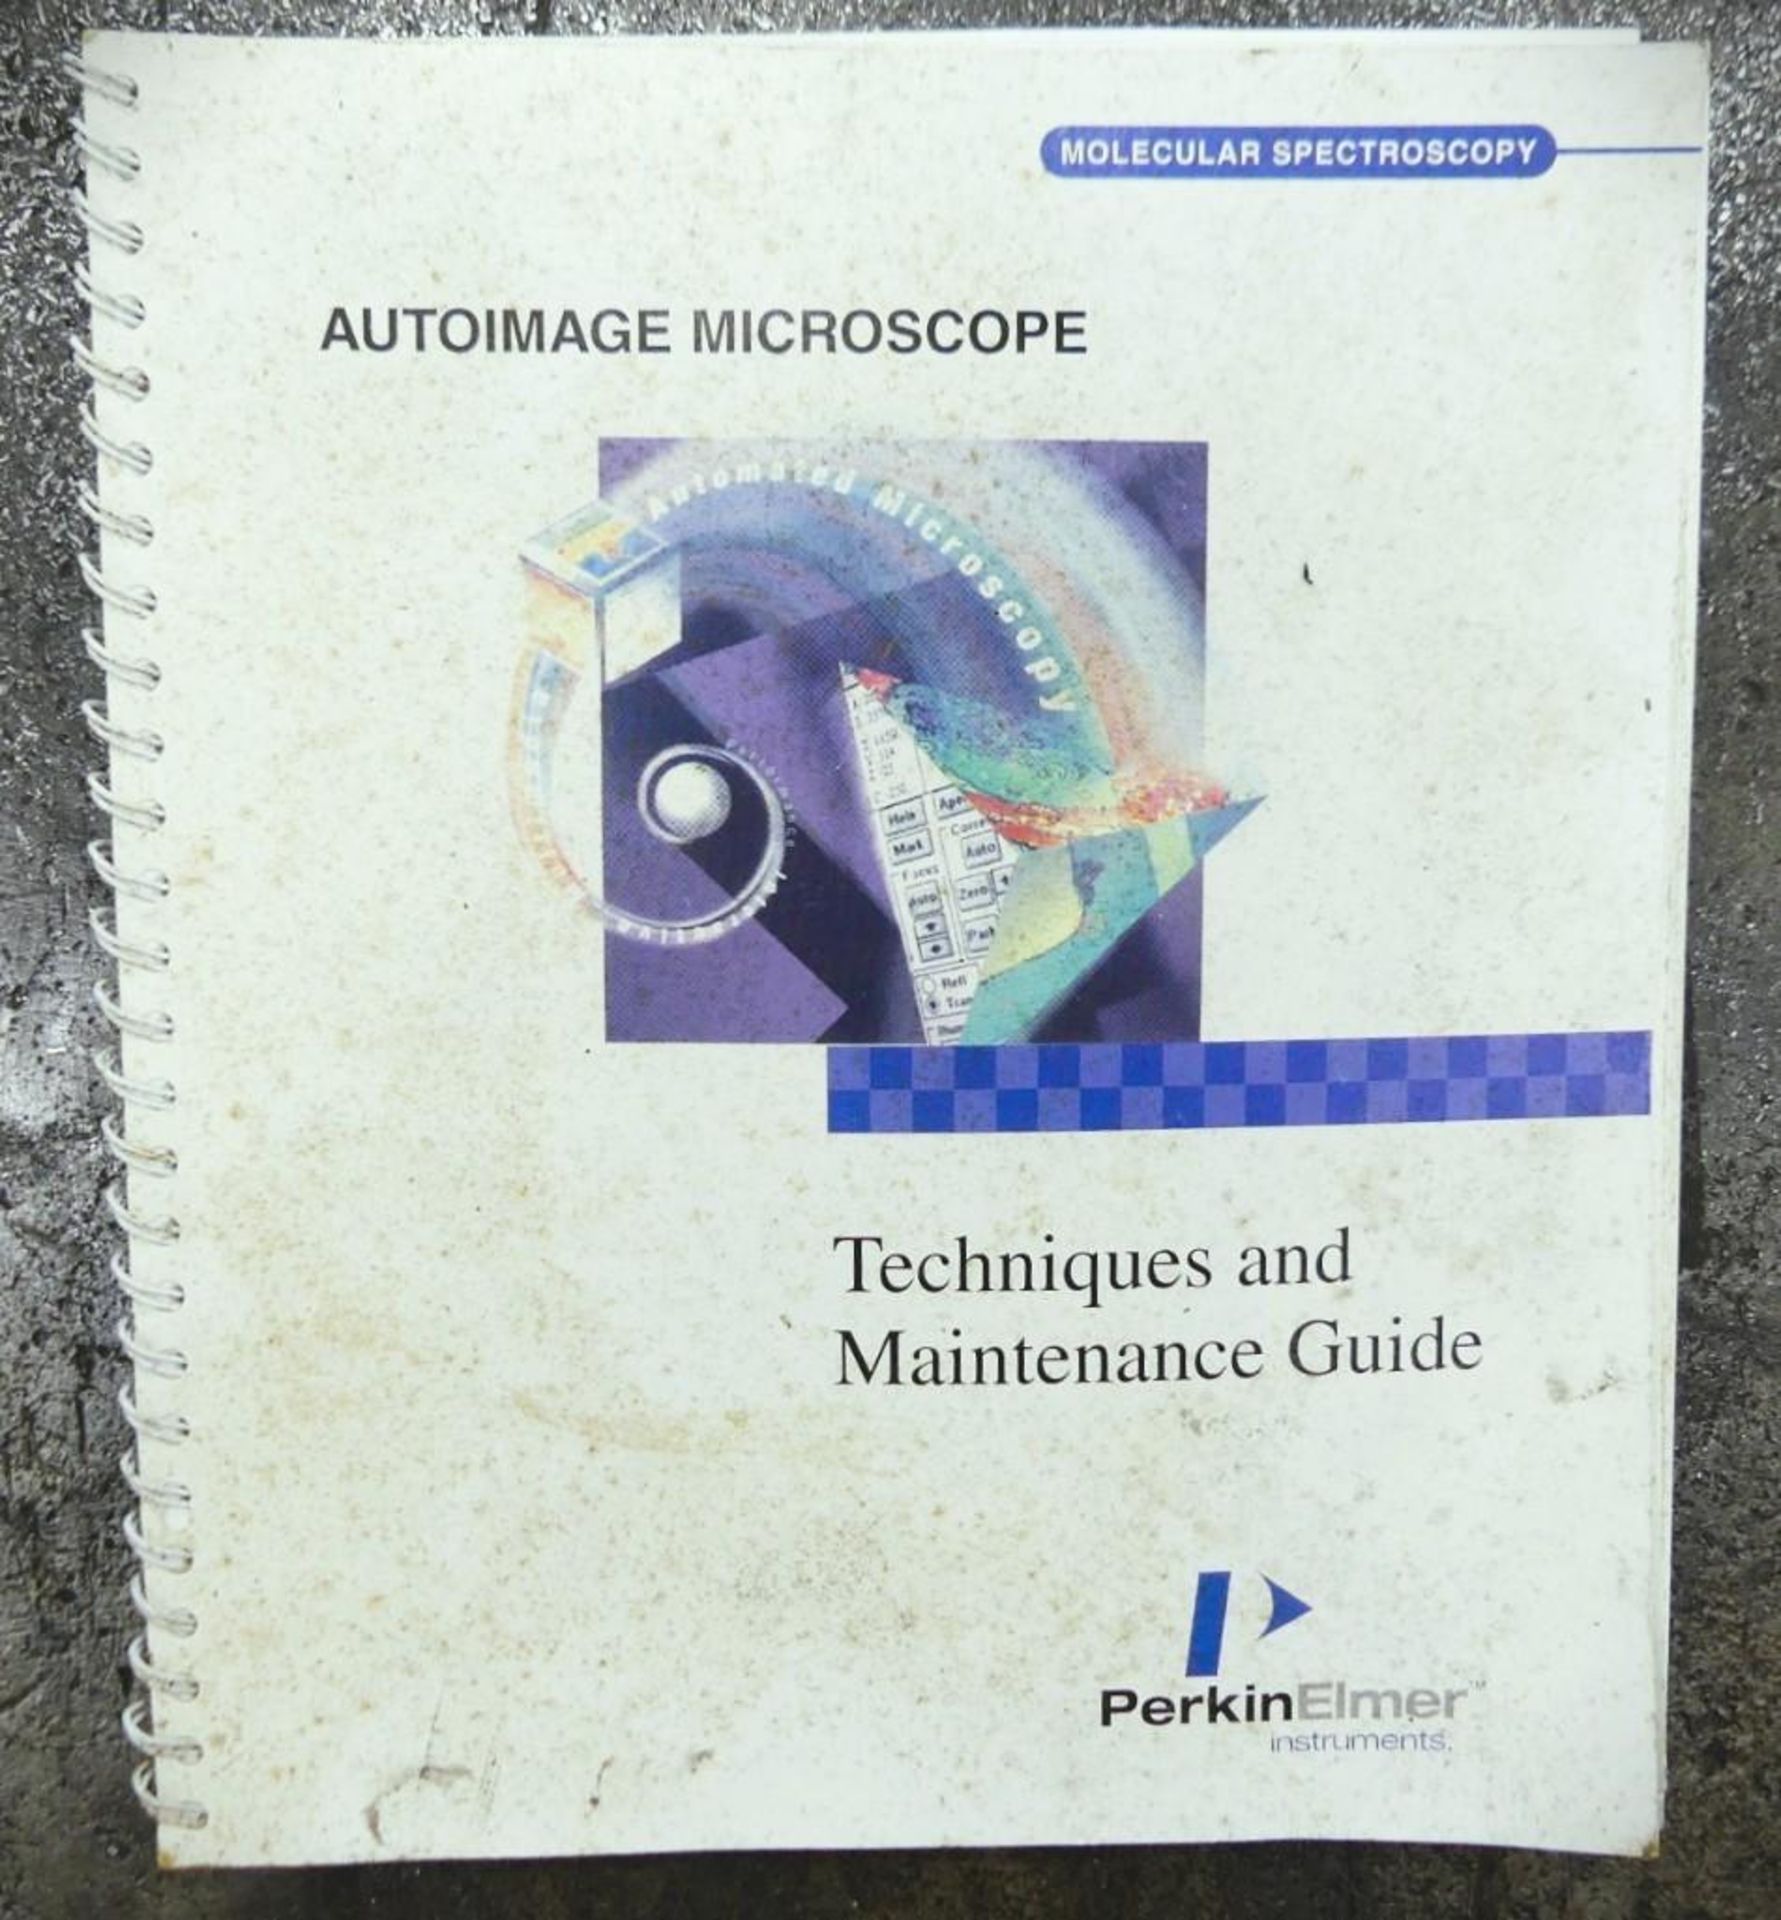 Autoimage Microscope - Image 12 of 13